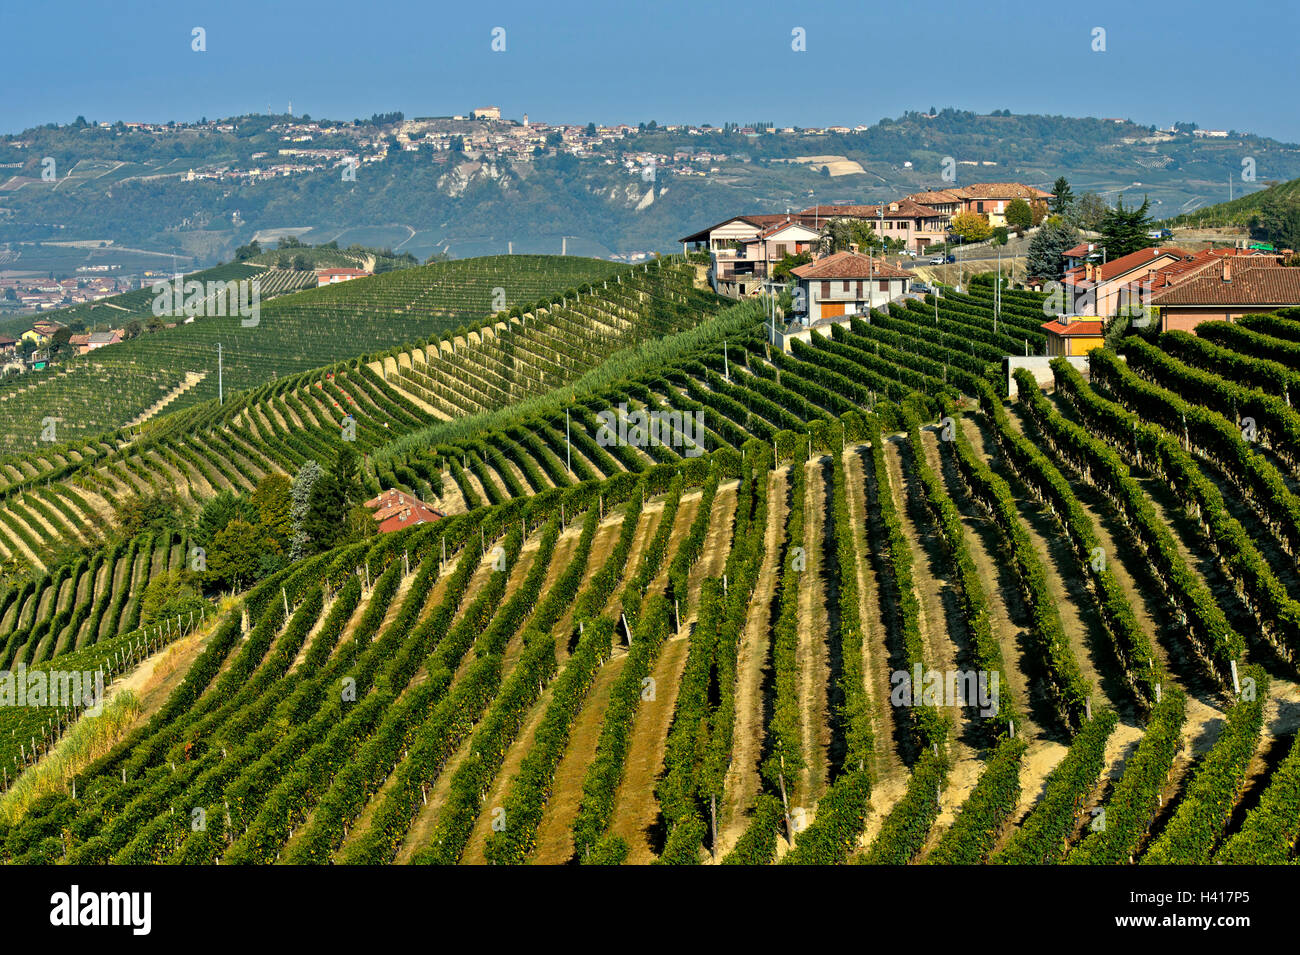 Vignes de raisins nebbiolo de Barbaresco vin rouge sur le sommet des collines, Treiso, Piémont, Italie Banque D'Images